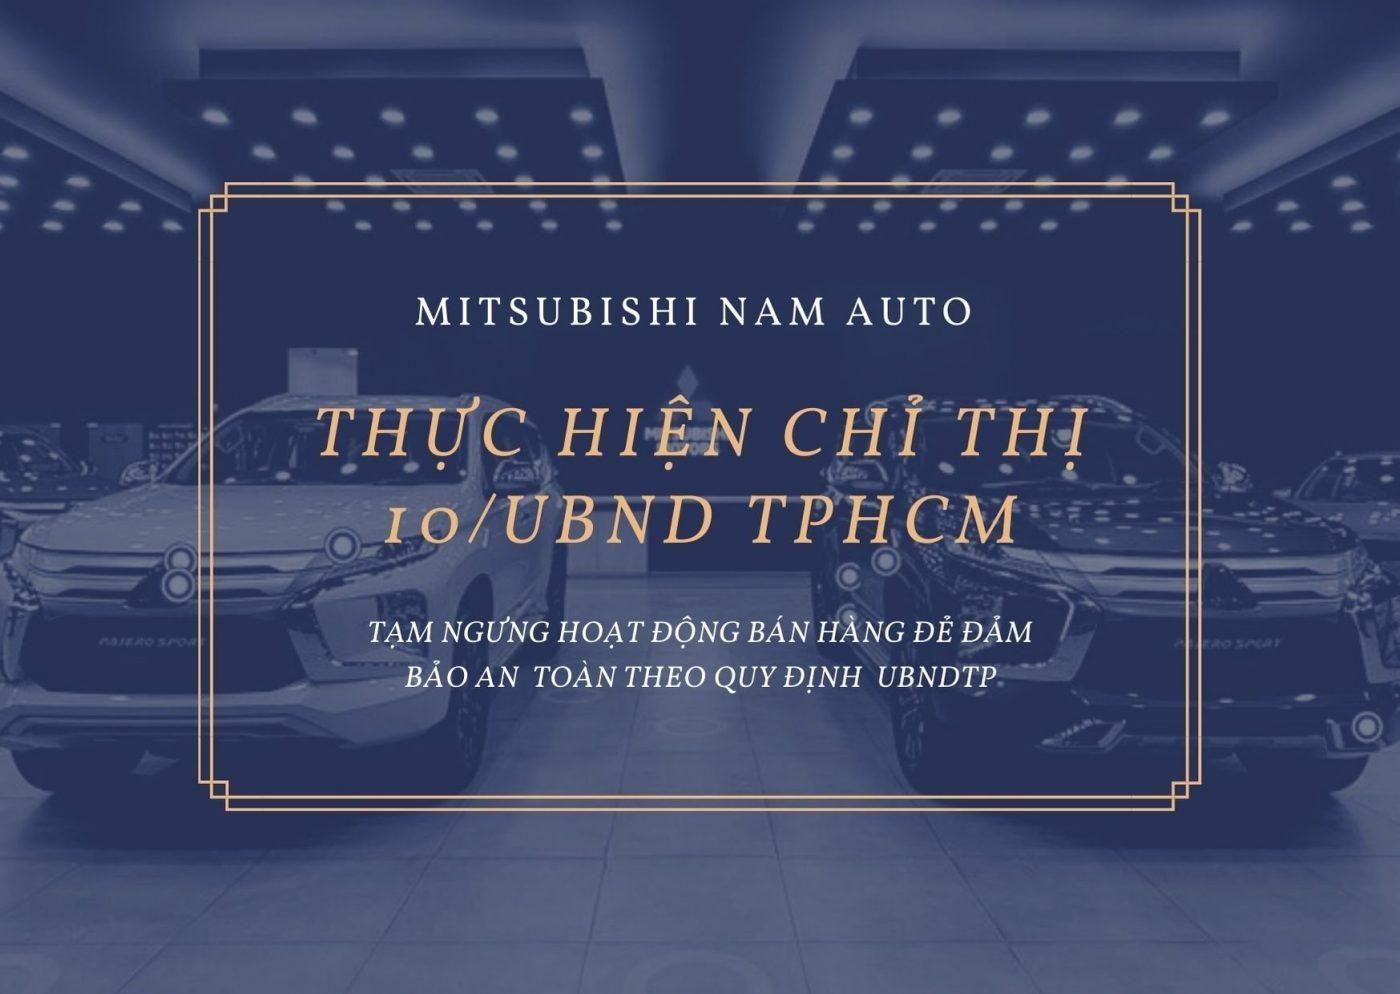 Mitsubishi Nam Auto Thông Báo